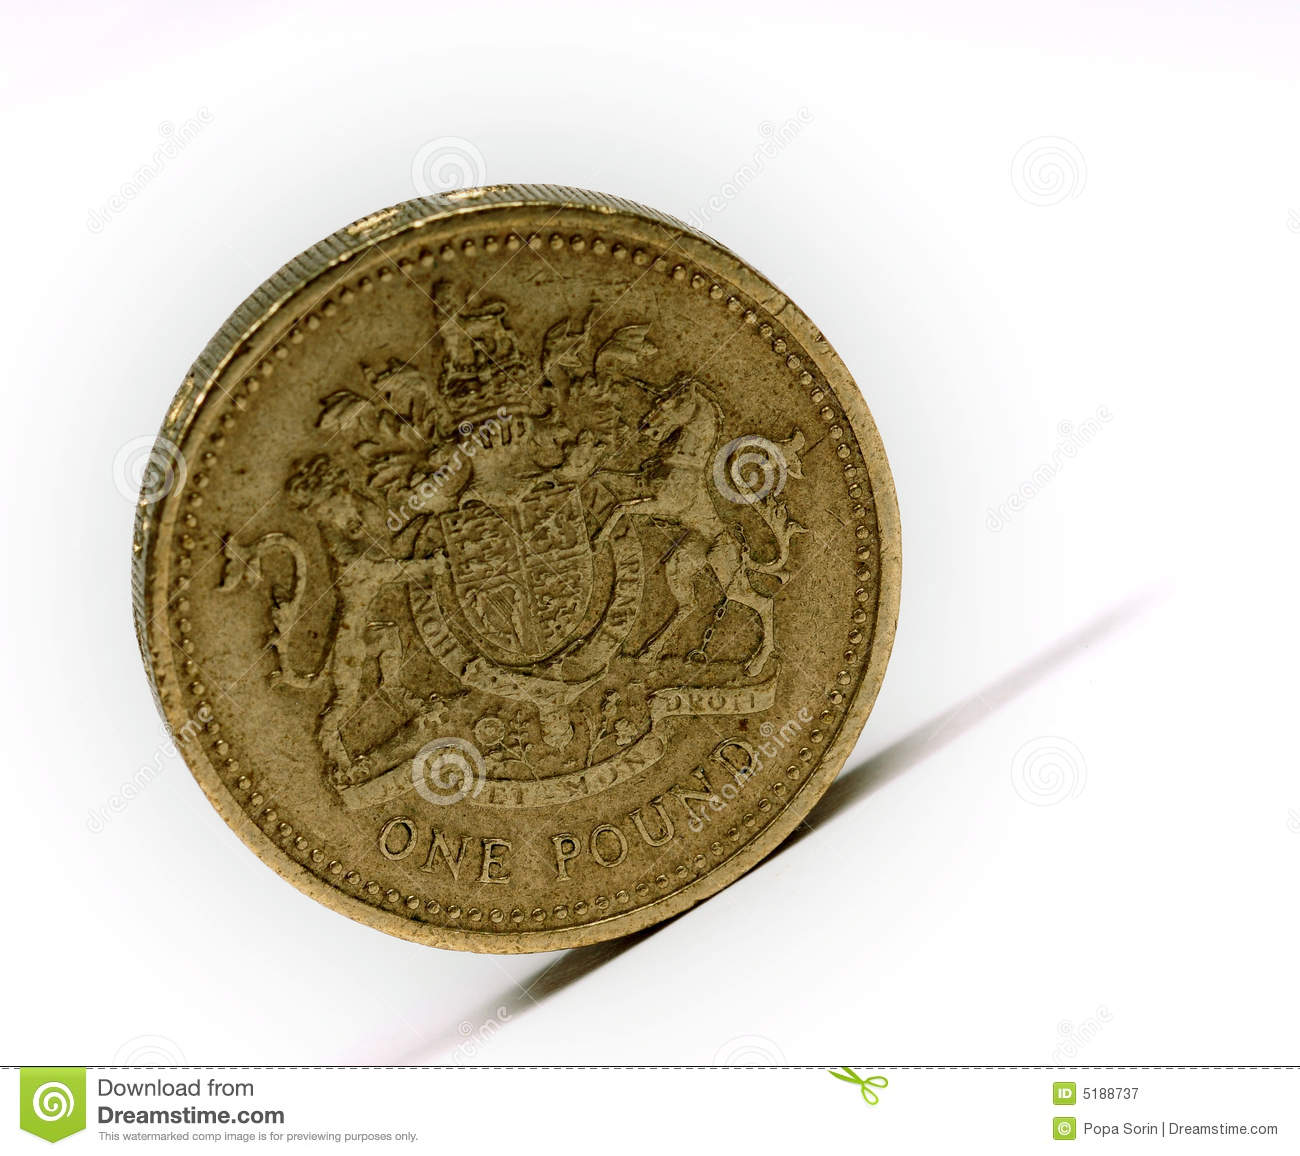 イギリスポンド... Free Stock Photography: One pound sterling